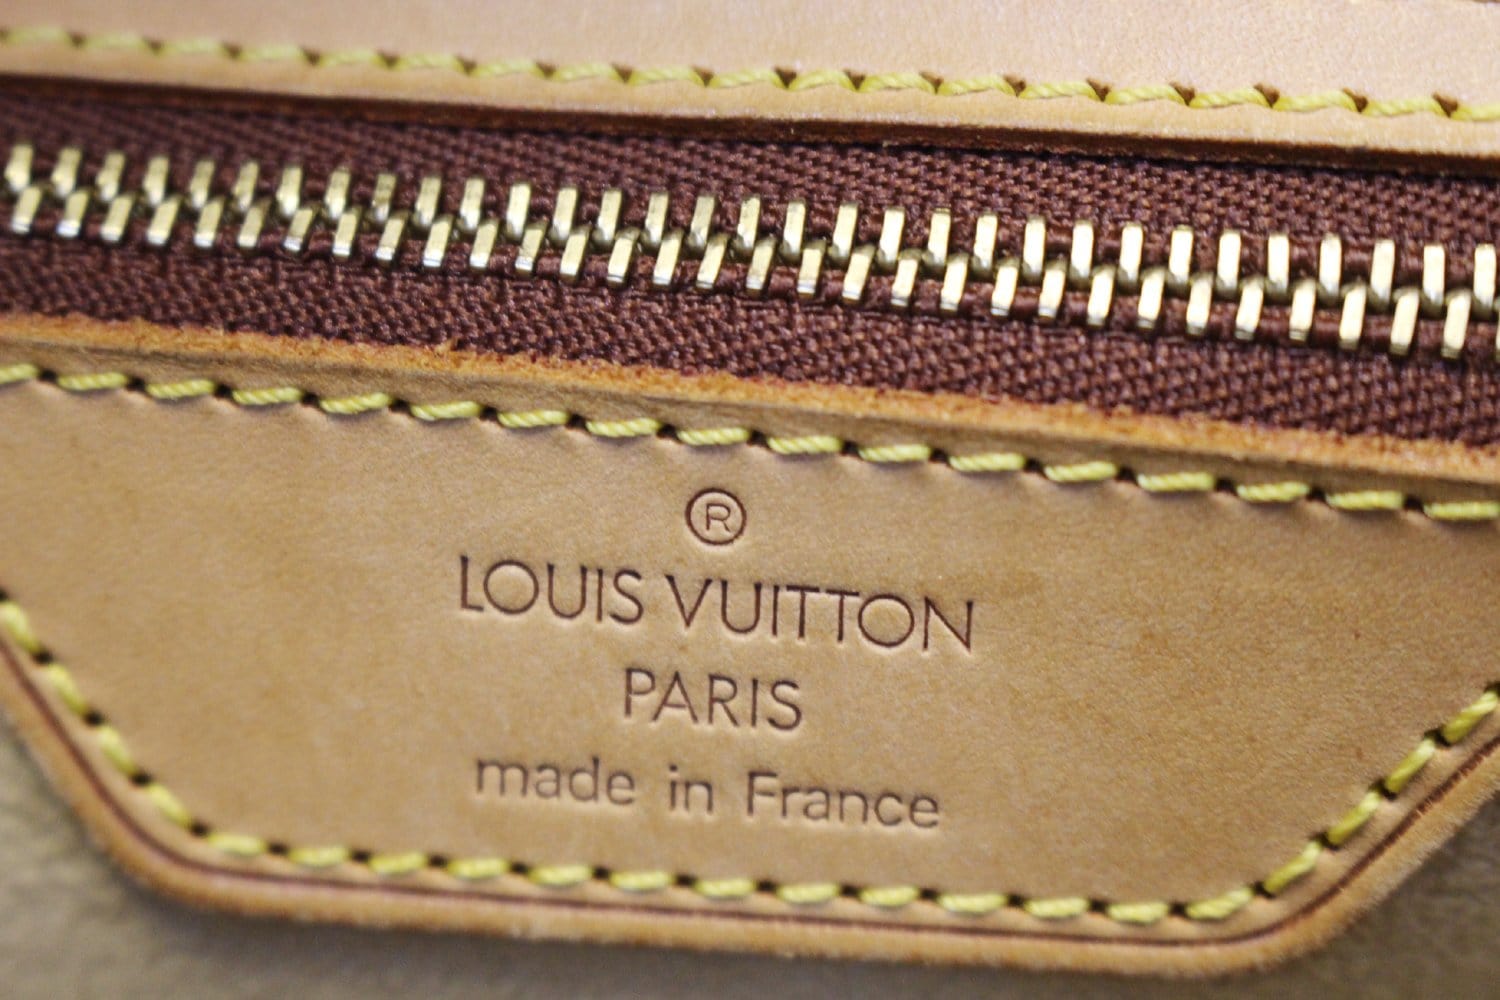 ❤REVIEW - Louis Vuitton Cite GM 